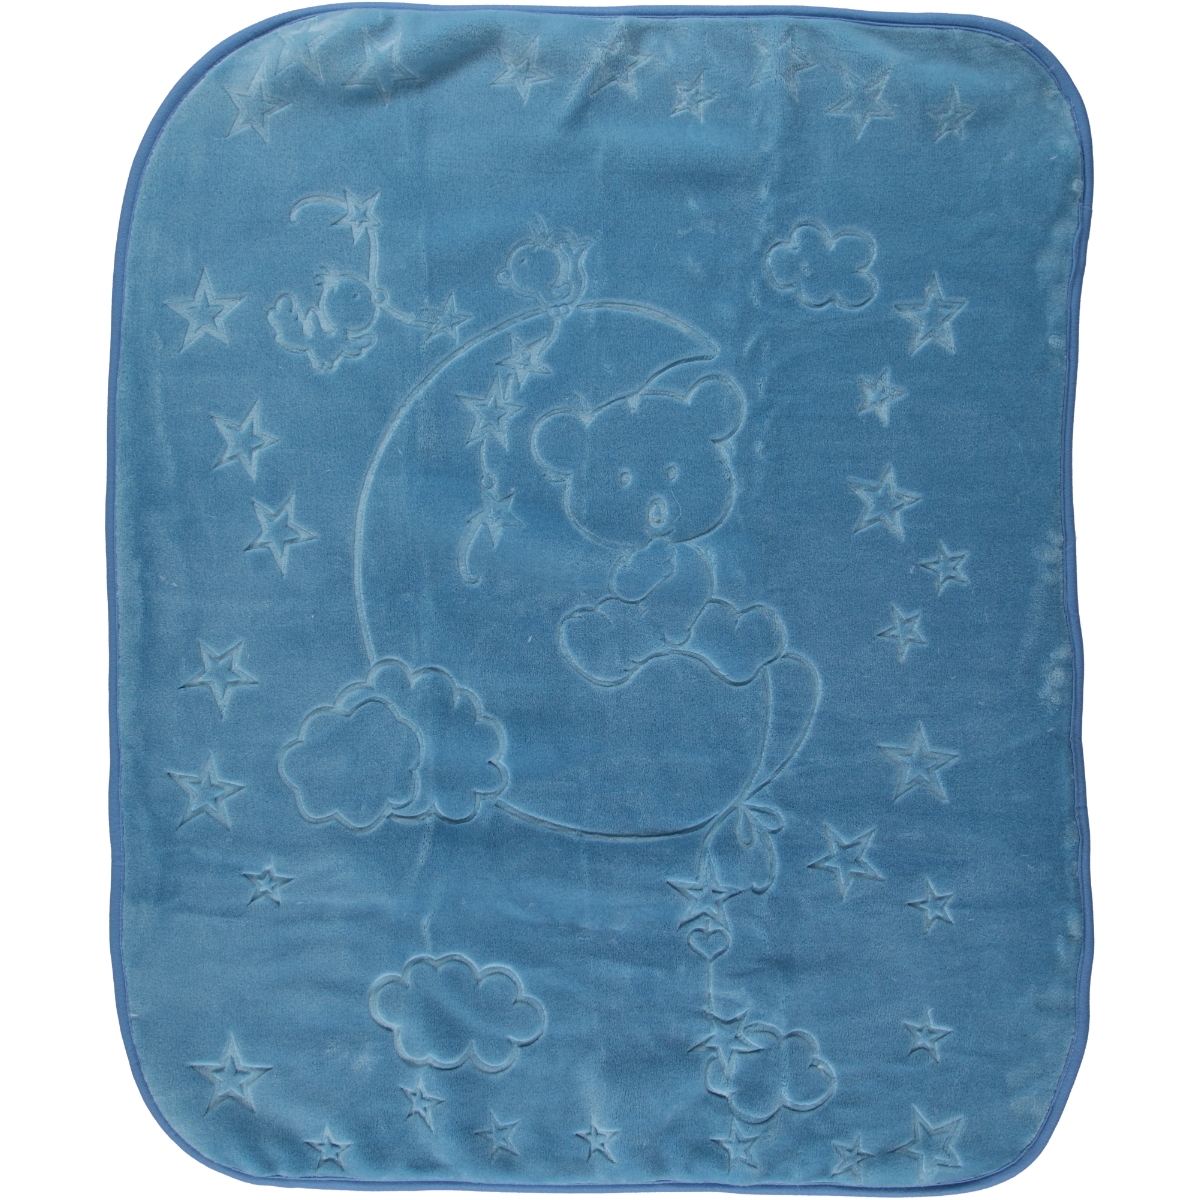 İlk Cemre Kabartmalı Peluş Battaniye 100x120 cm Mavi